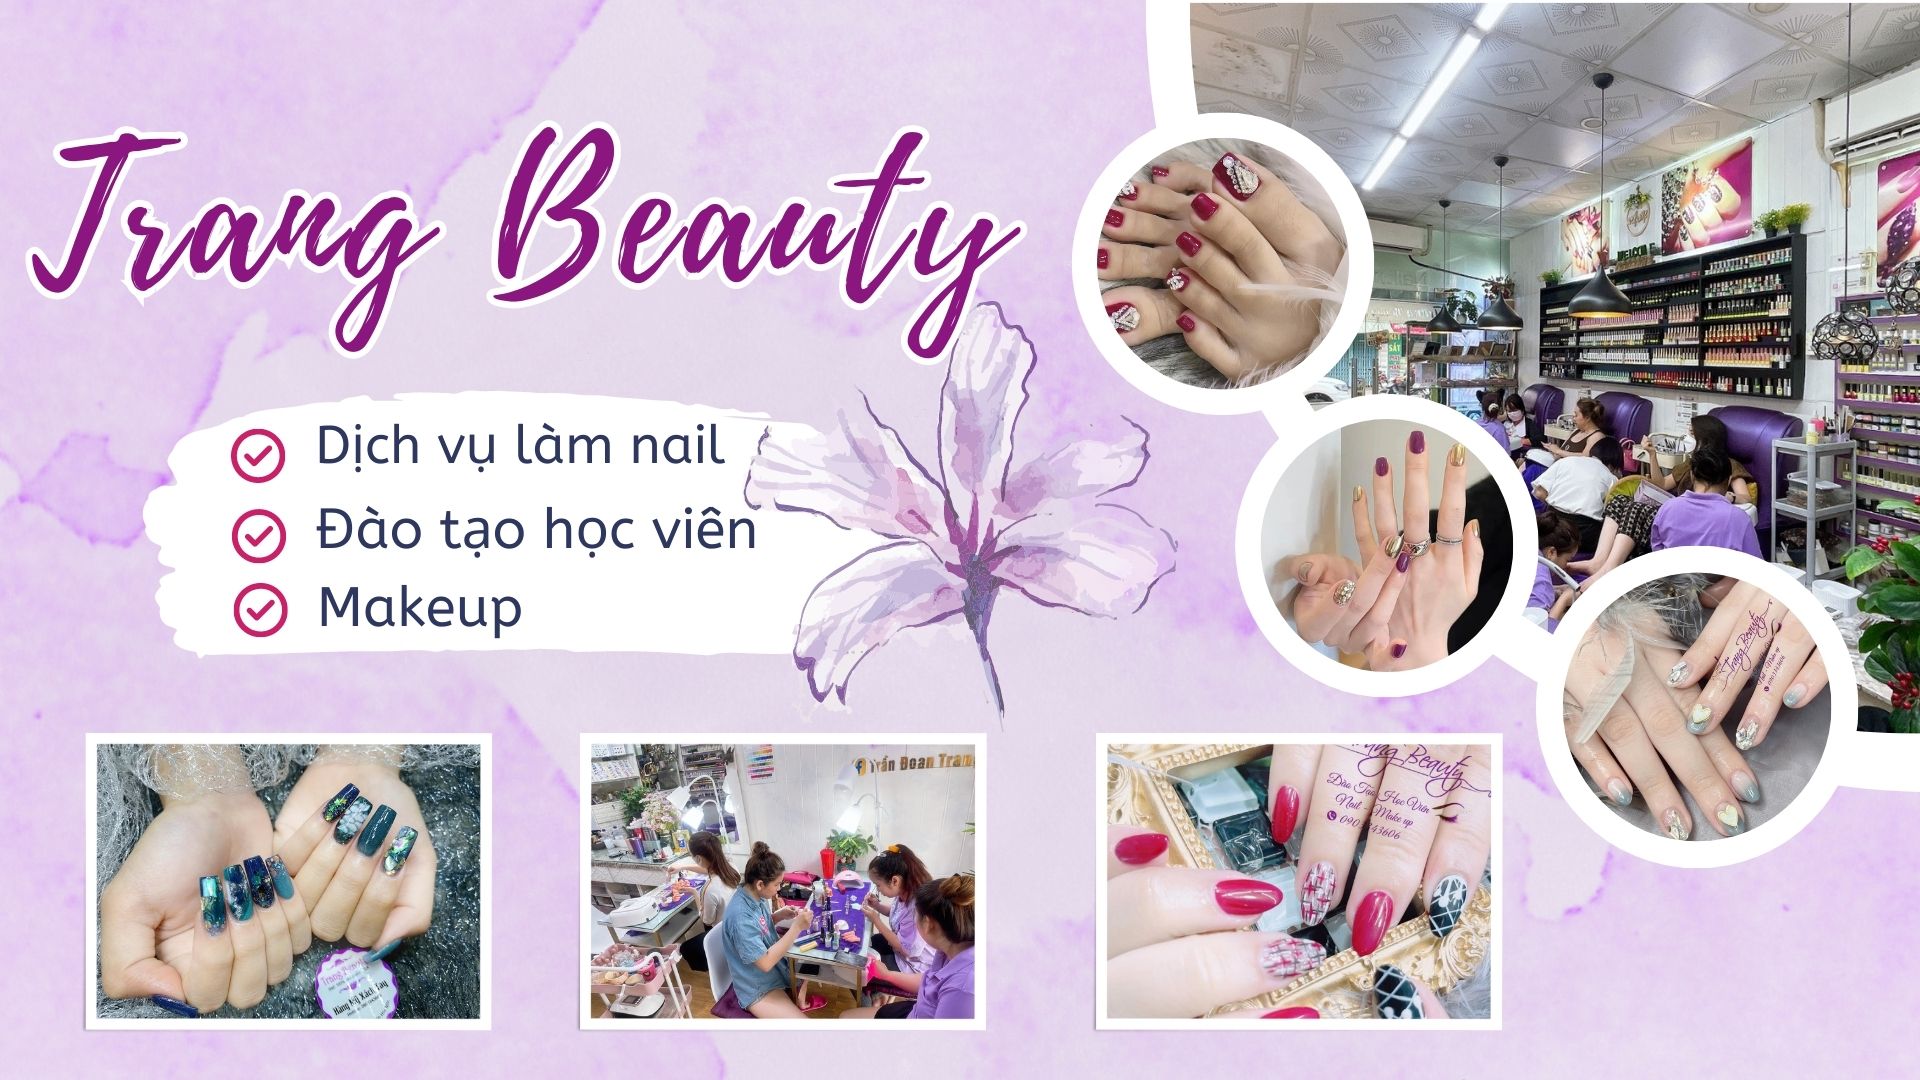 Trang Beauty - Tiệm Làm Nail Đẹp Và Uy Tín Nhất Tại Hóc Môn